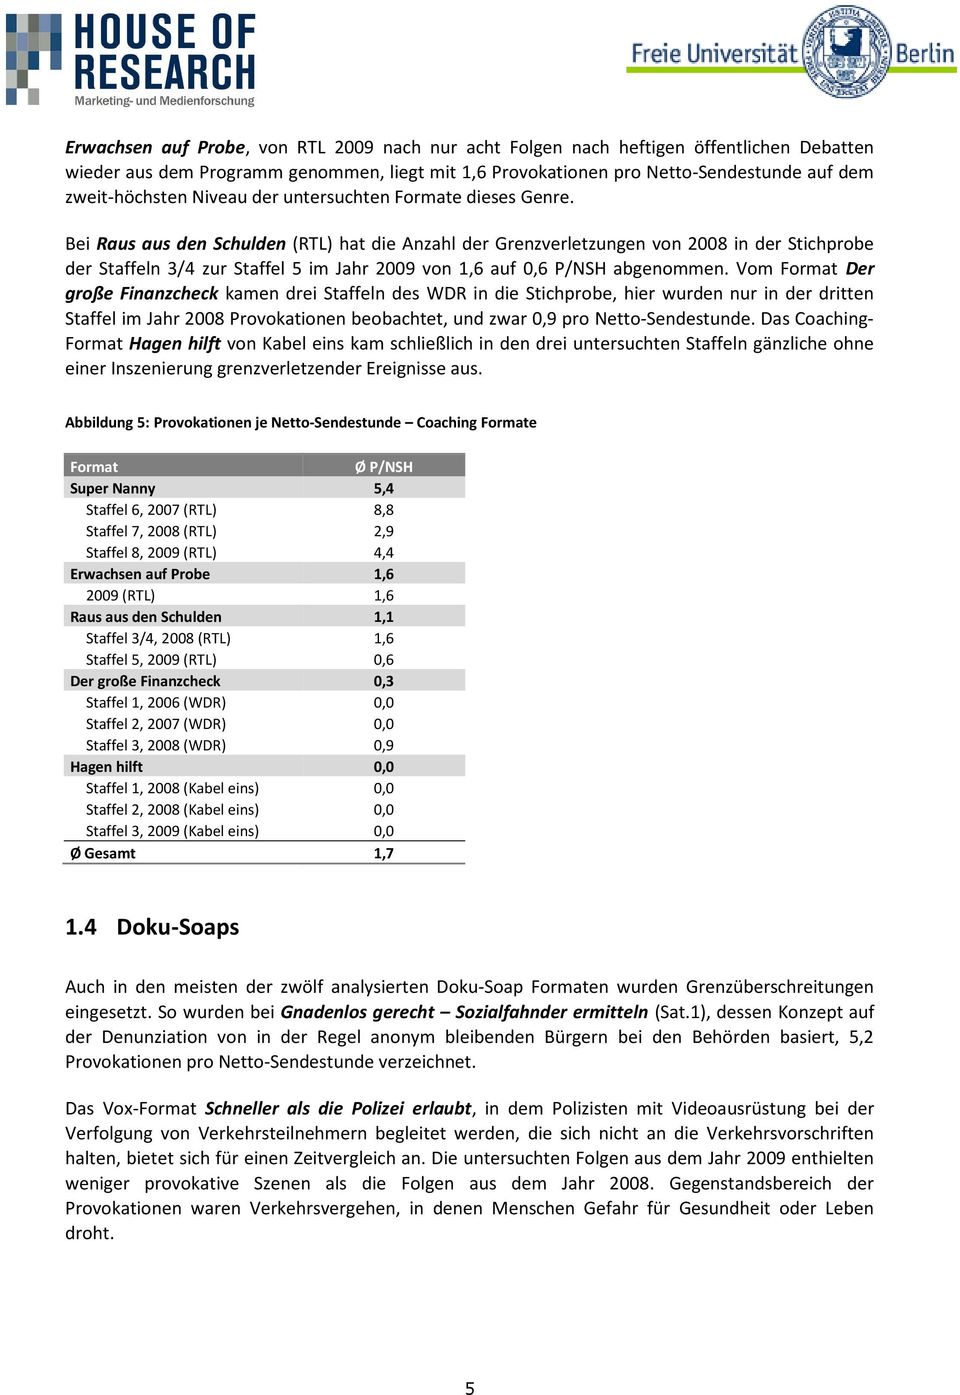 Bei Raus aus den Schulden (RTL) hat die Anzahl der Grenzverletzungen von 2008 in der Stichprobe der Staffeln 3/4 zur Staffel 5 im Jahr 2009 von 1,6 auf 0,6 P/NSH abgenommen.